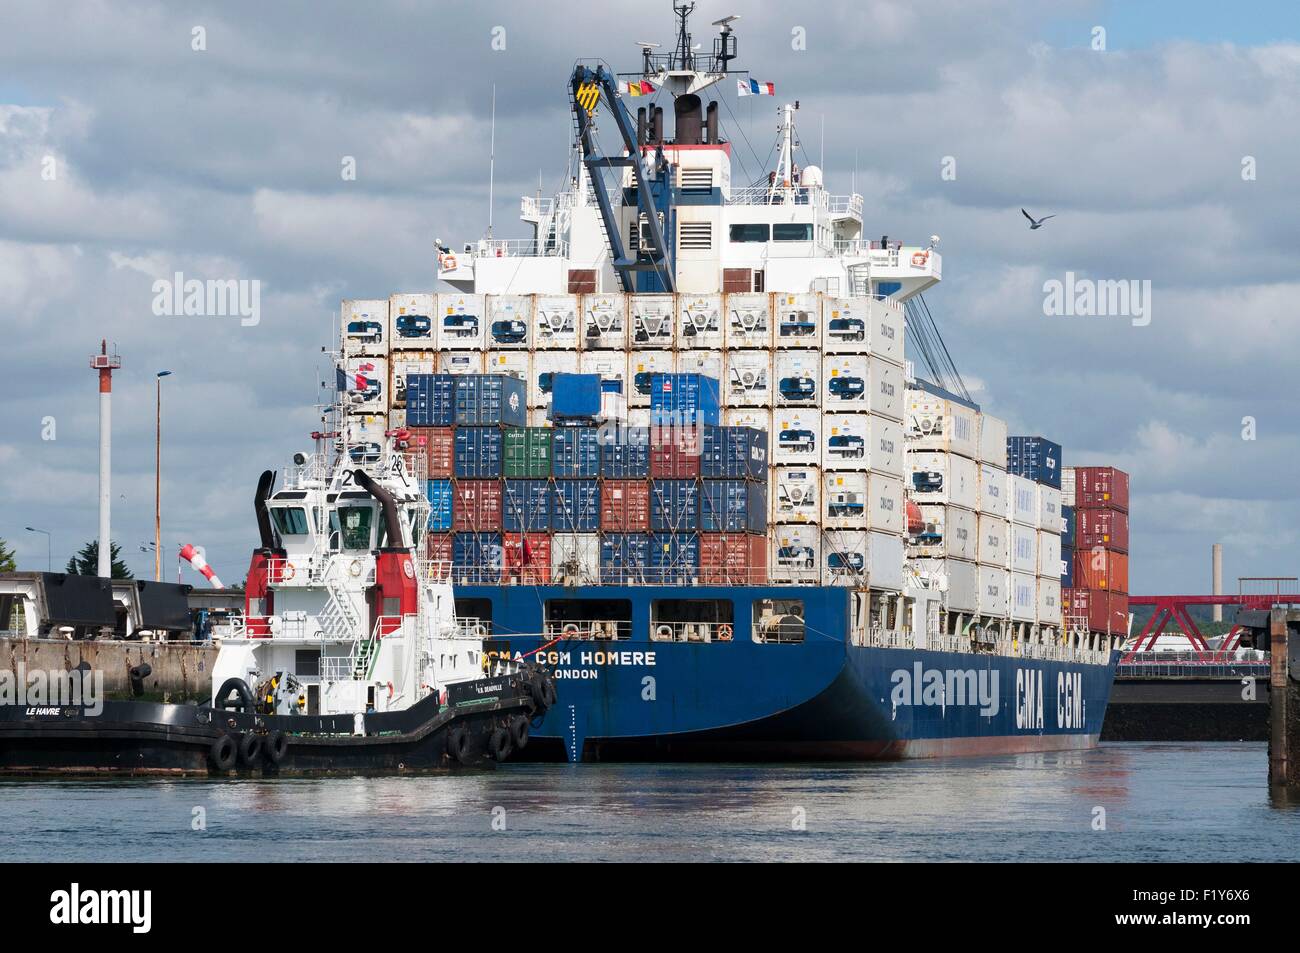 Francia, Seine Maritime, Le Havre, puerto comercial, contenedor de CGA CGM Homero Foto de stock